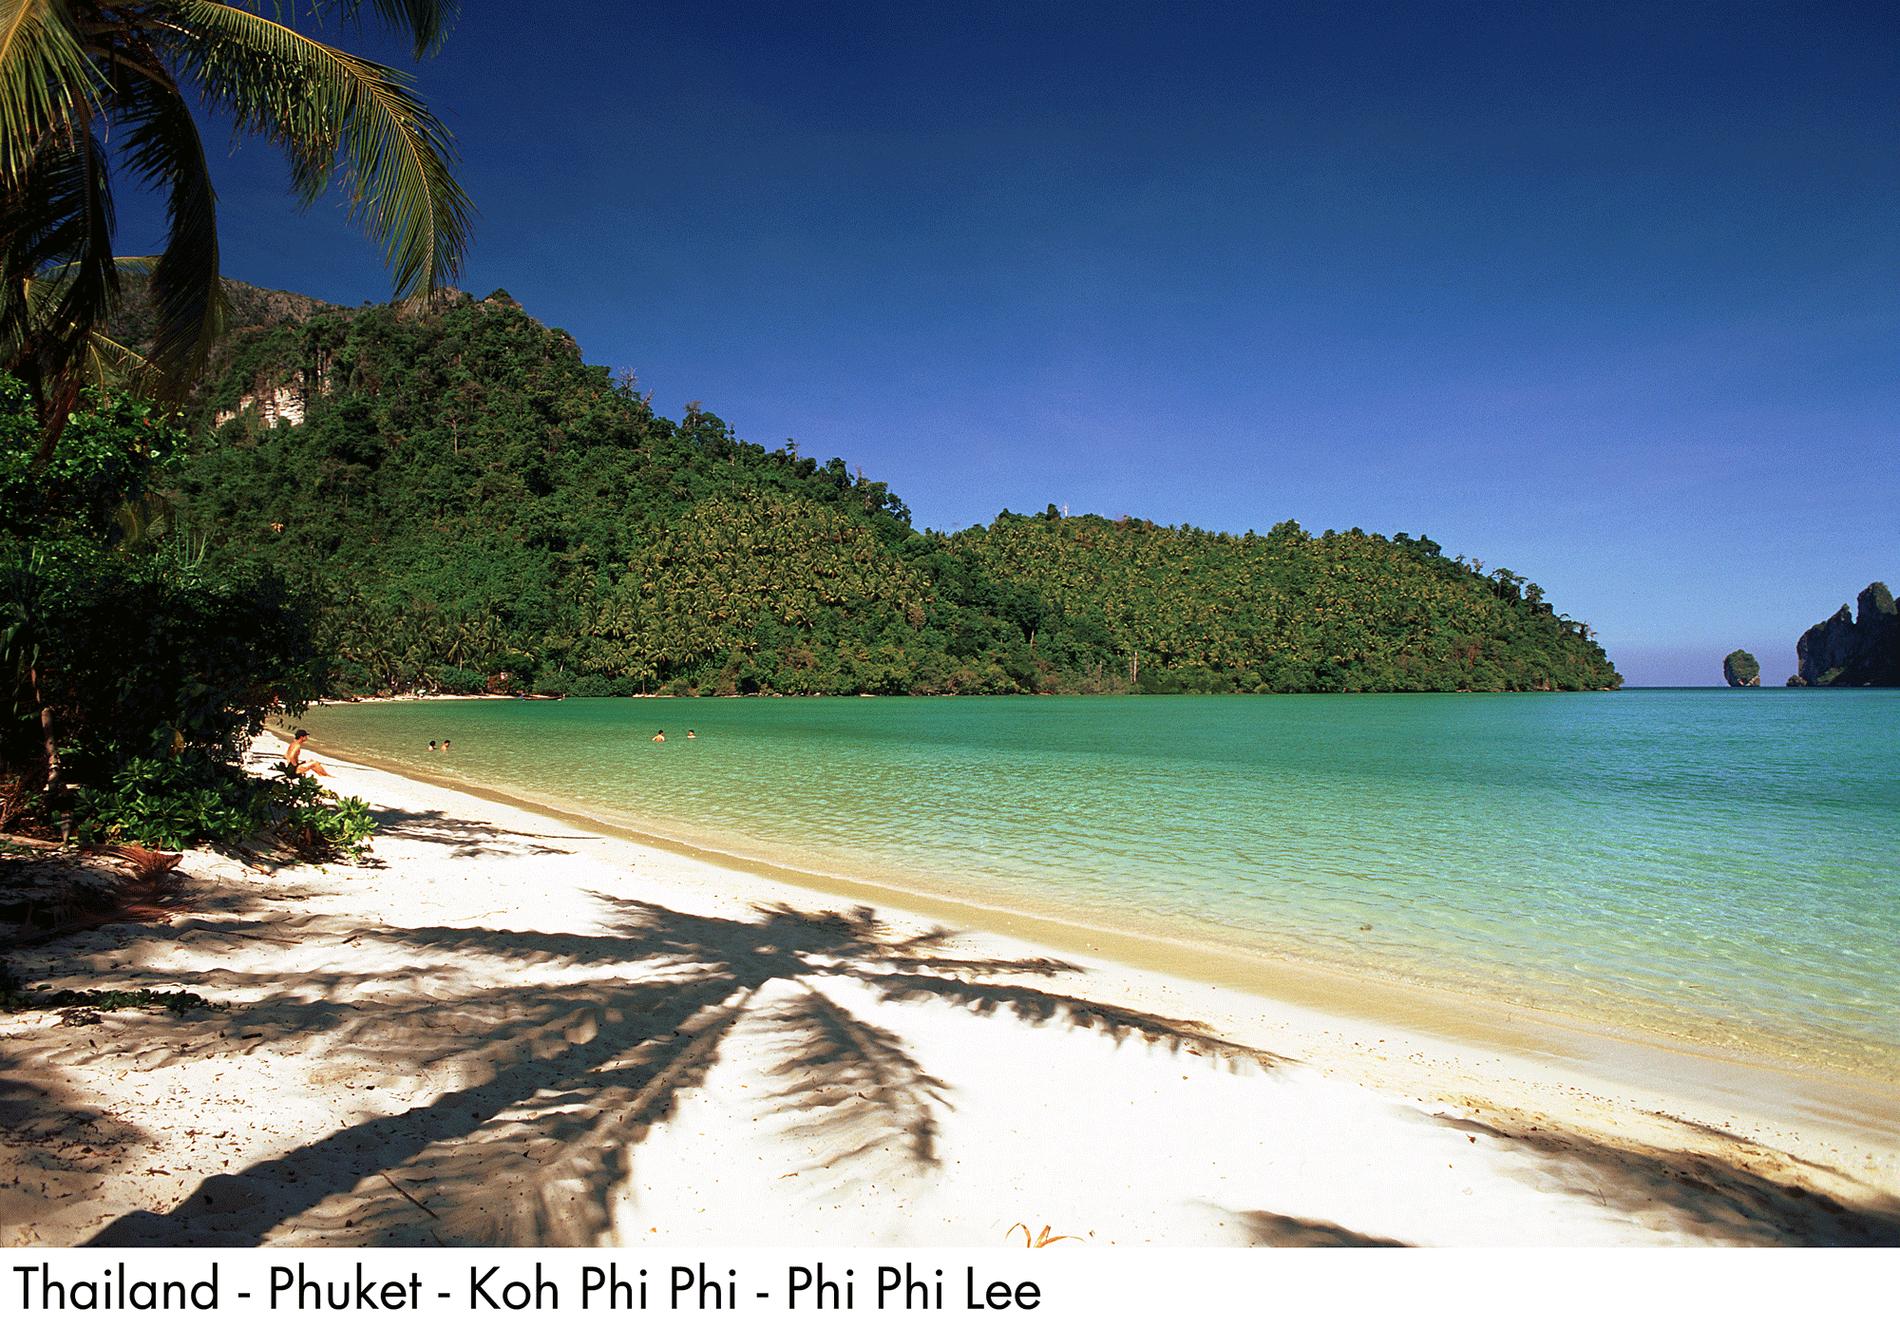 18. Koh Phi Phi Don, Thailand Denna ö är den största av de populära Phi Phi-öarna. Den består av 90 procent bergig djungel och vattentaxi är det överlägsna transportmedlet mellan öns alla stränder. Här finns snorkling, dykning, vandring, klättring och djuphavsfiske. Bland annat.
Missa inte: Att testa yoga på stranden för ultimat avkoppling. Charter till Thailand!